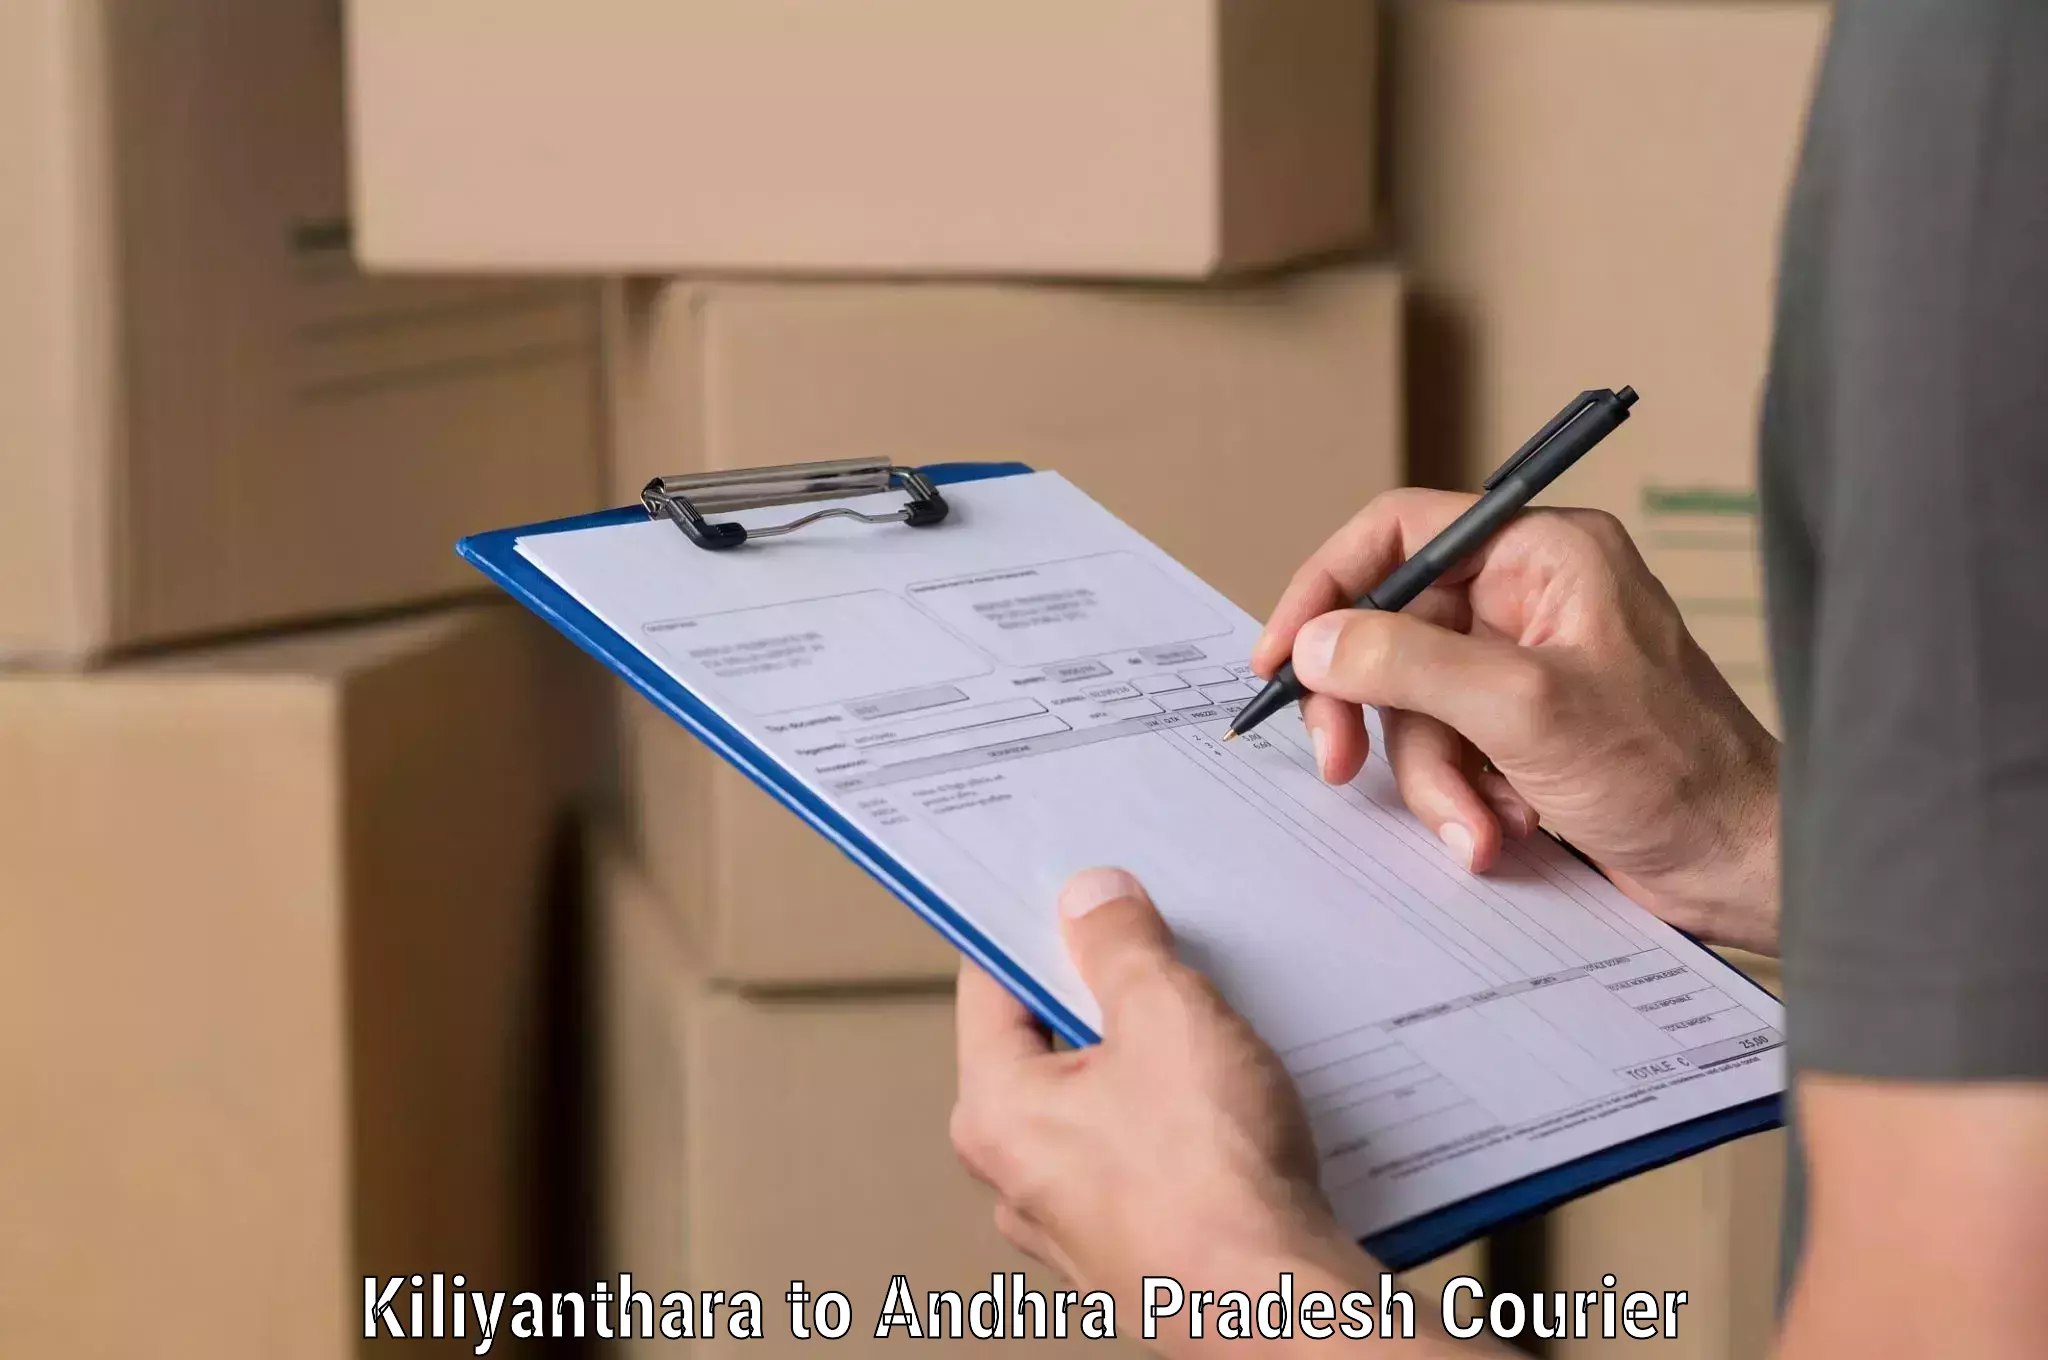 Express logistics service Kiliyanthara to Galiveedu